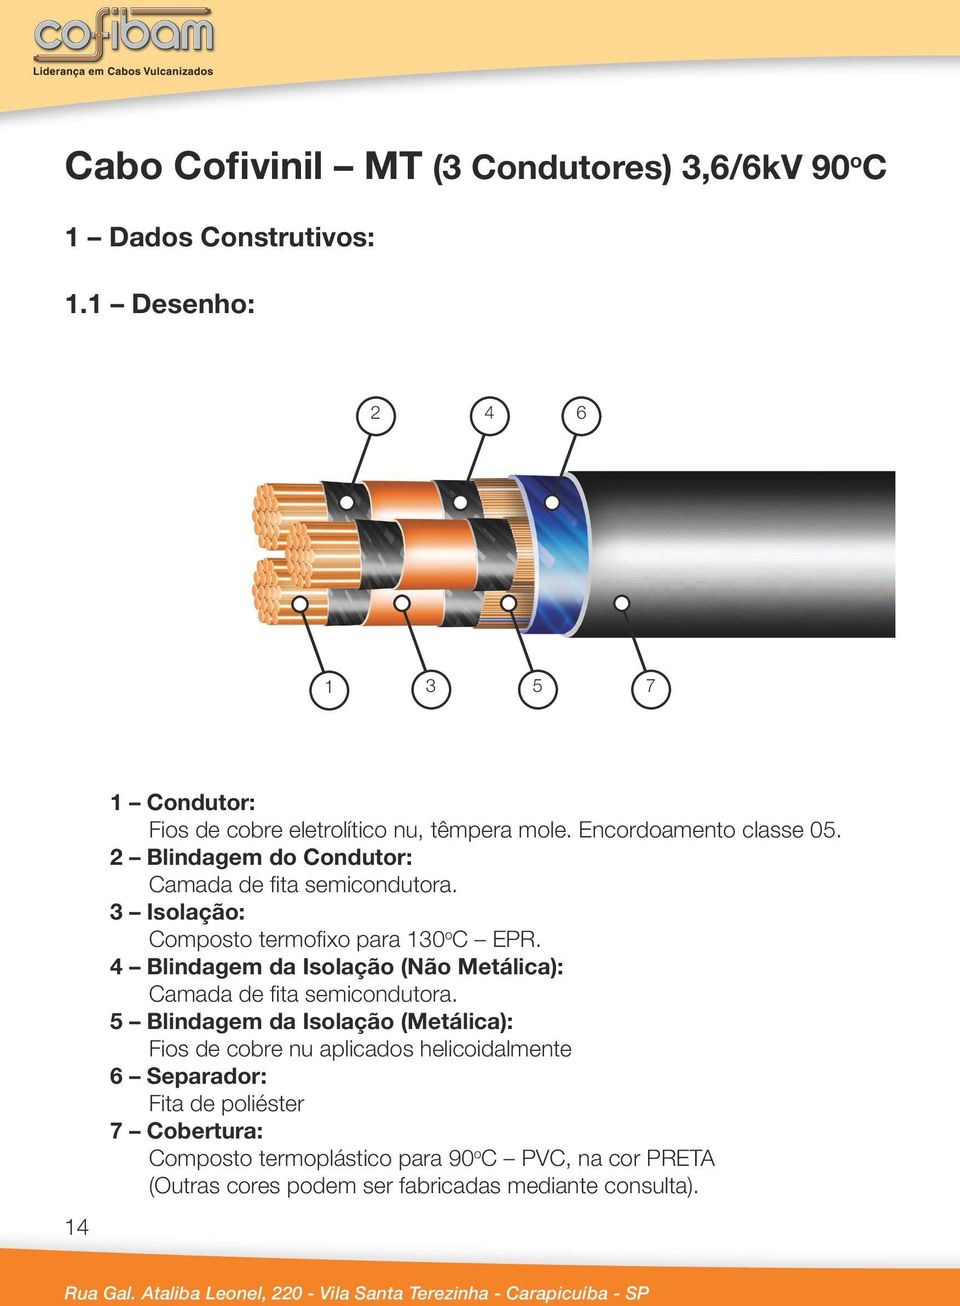 4 Blindagem da Isolação (Não Metálica): Camada de fita semicondutora.